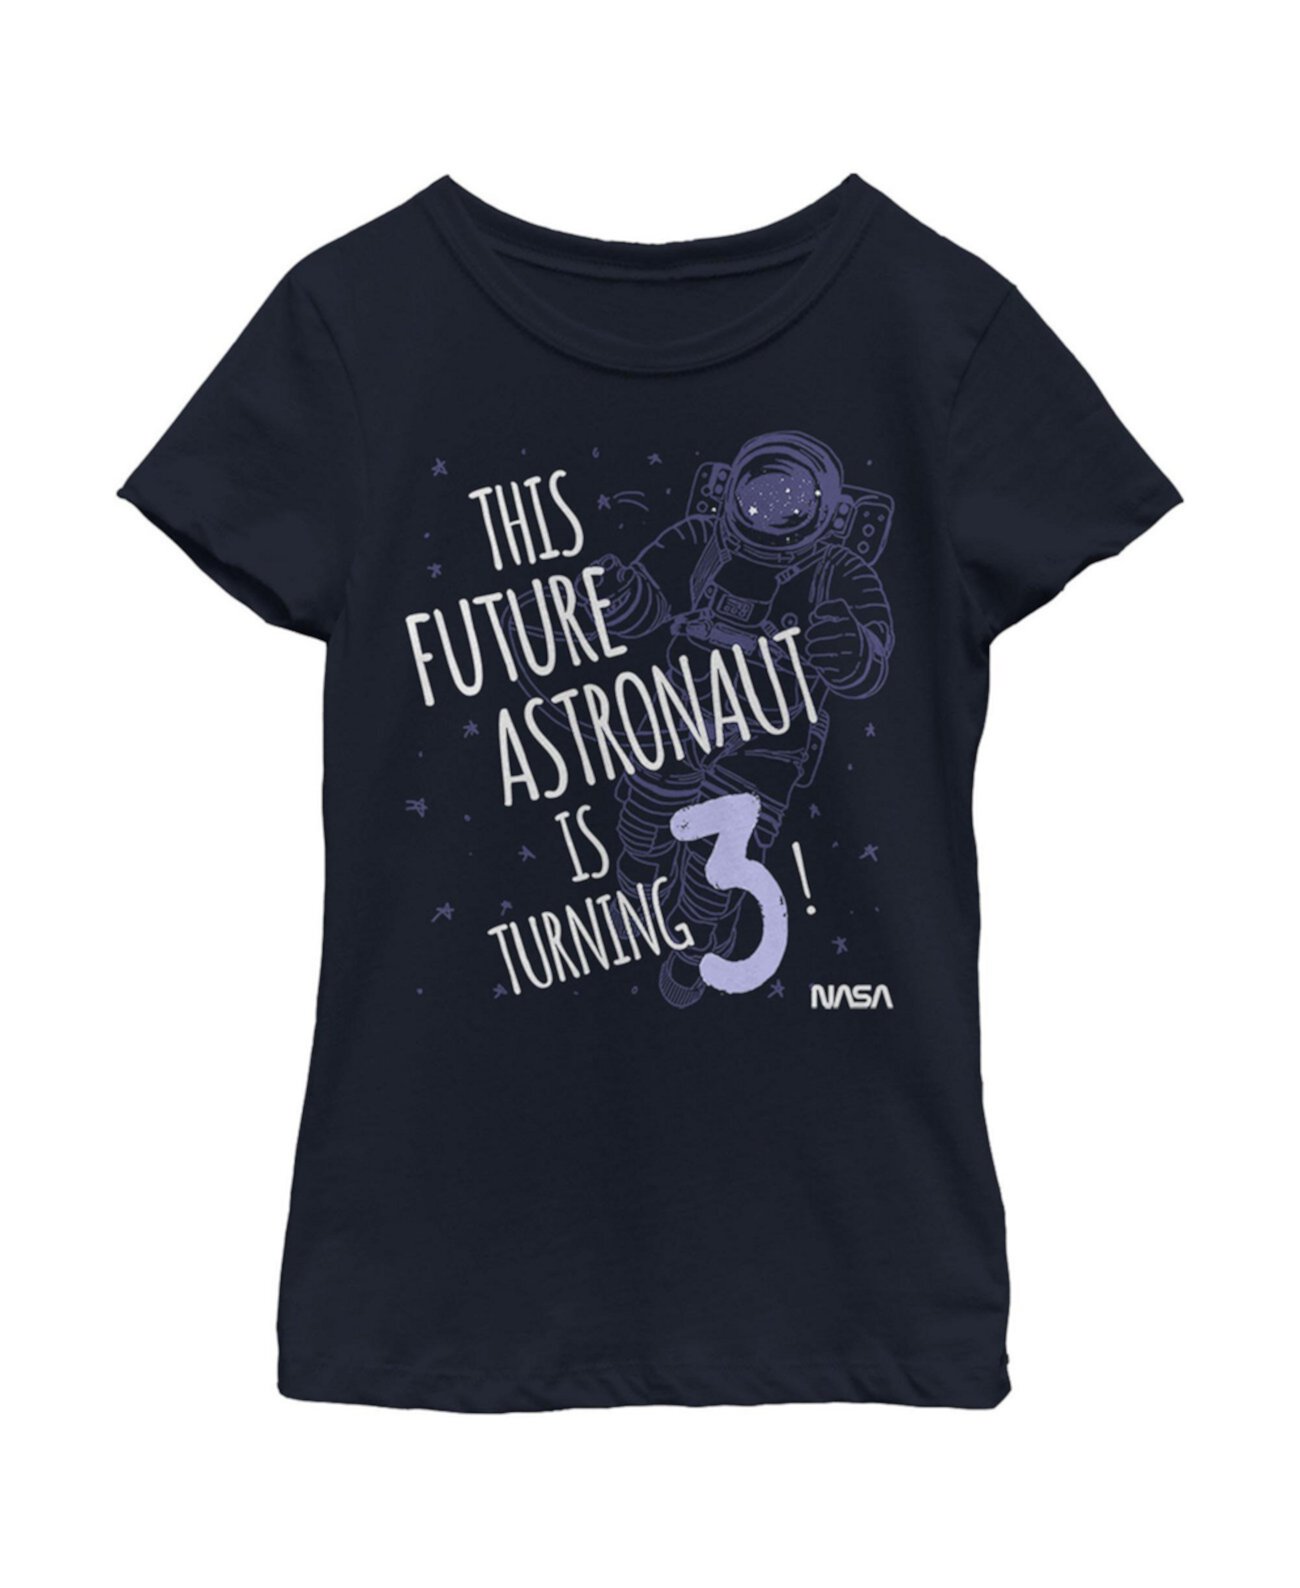 Детская футболка с контурным эскизом для девочки «Этот астронавт будущего» NASA